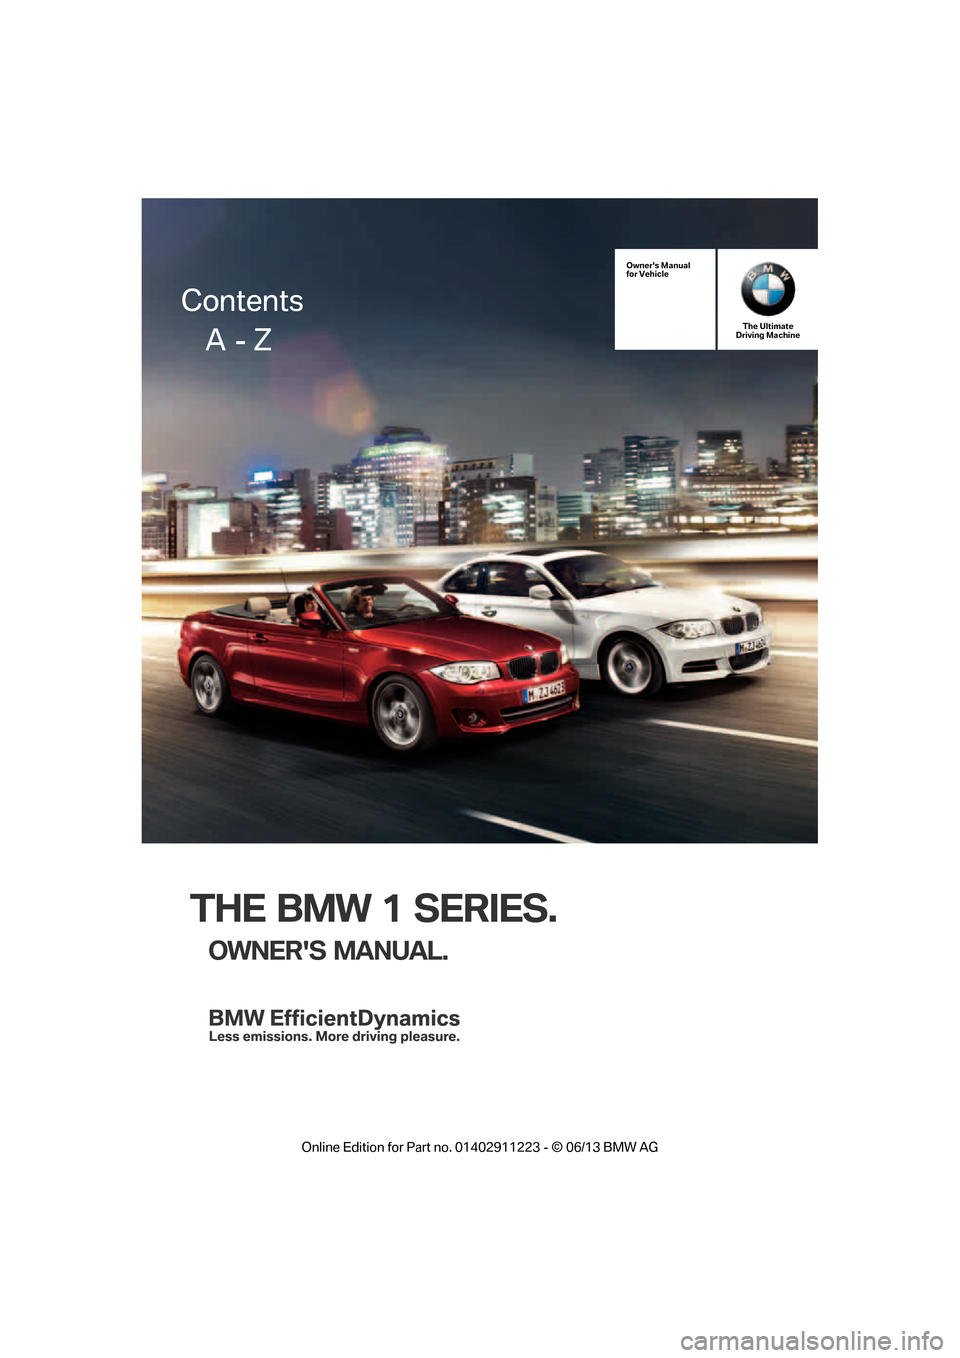 BMW 1 SERIES 2013 E82 Owners Manual THE BMW 1 SERIES.
OWNERS MANUAL.
Owners Manual
for VehicleThe Ultimate
Driving Machine
Contents
     A  - Z

�2�Q�O�L�Q�H �(�G�L�W�L�R�Q �I�R�U �3�D�U�W �Q�R� ����������� � �